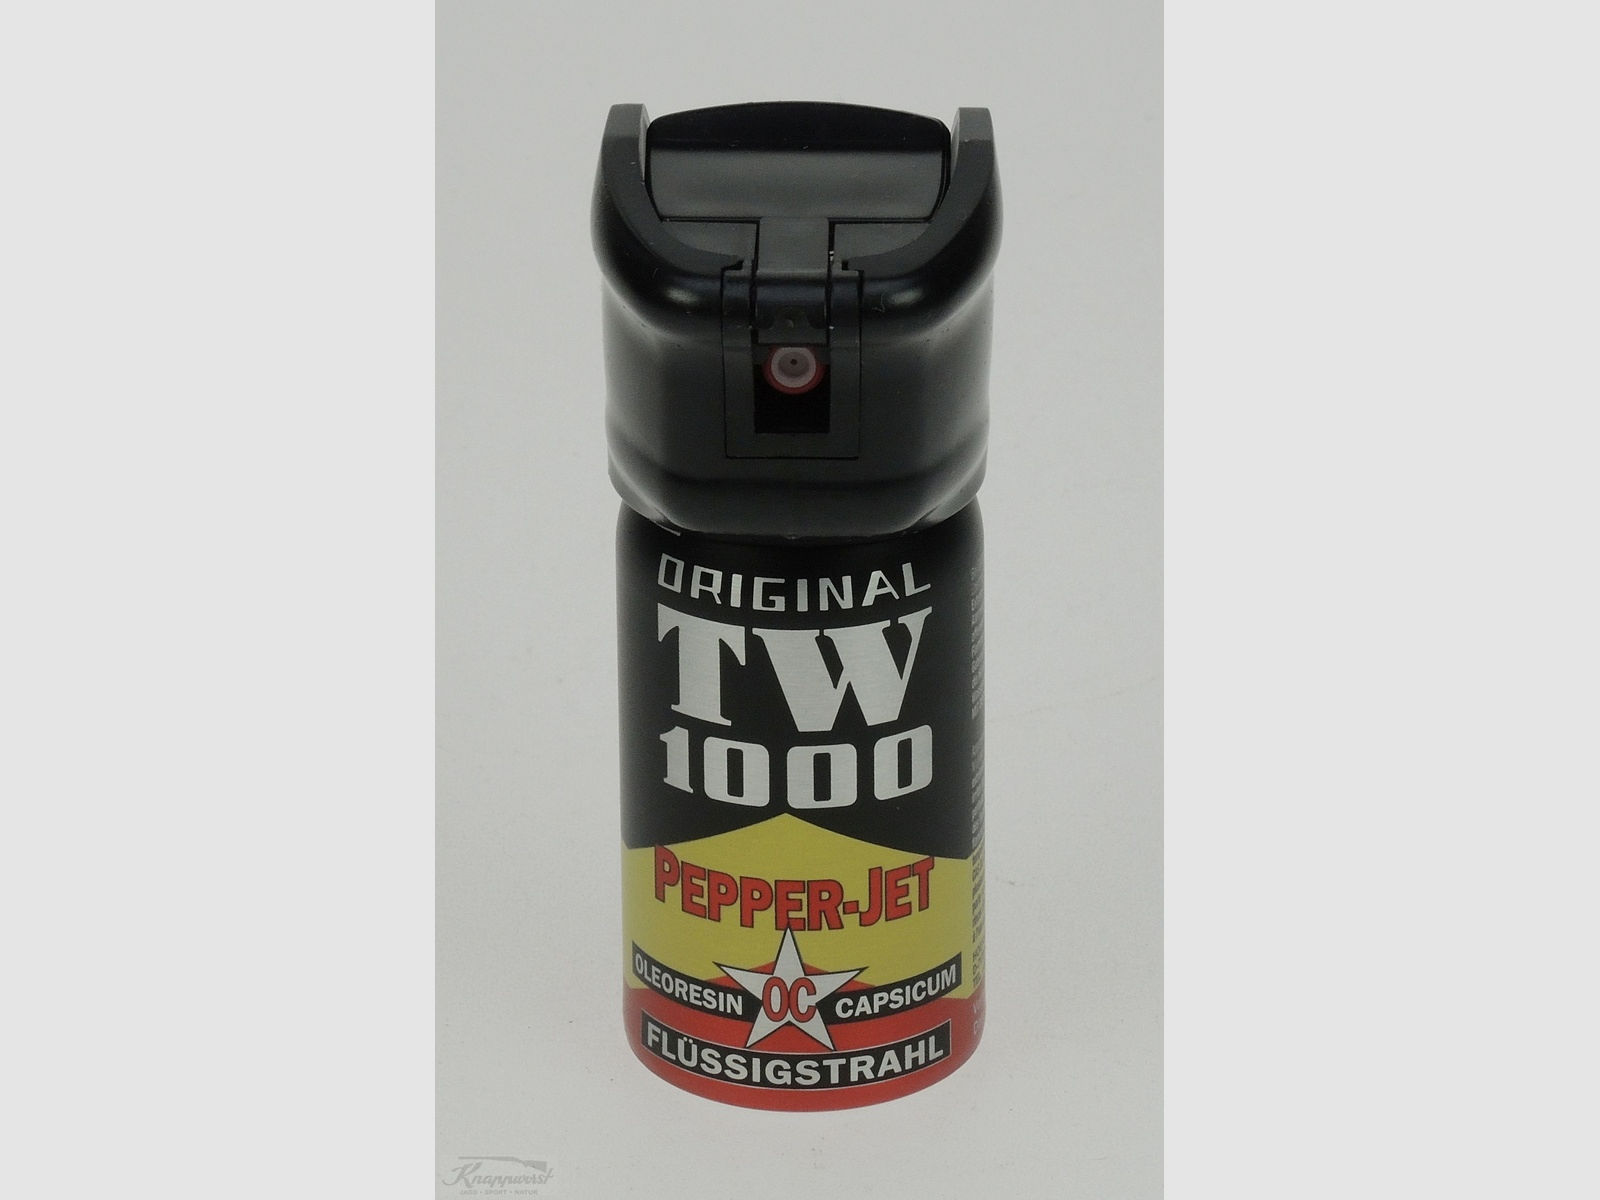 TW 1000 Pepper-JET Flüssigstrahl 40ml